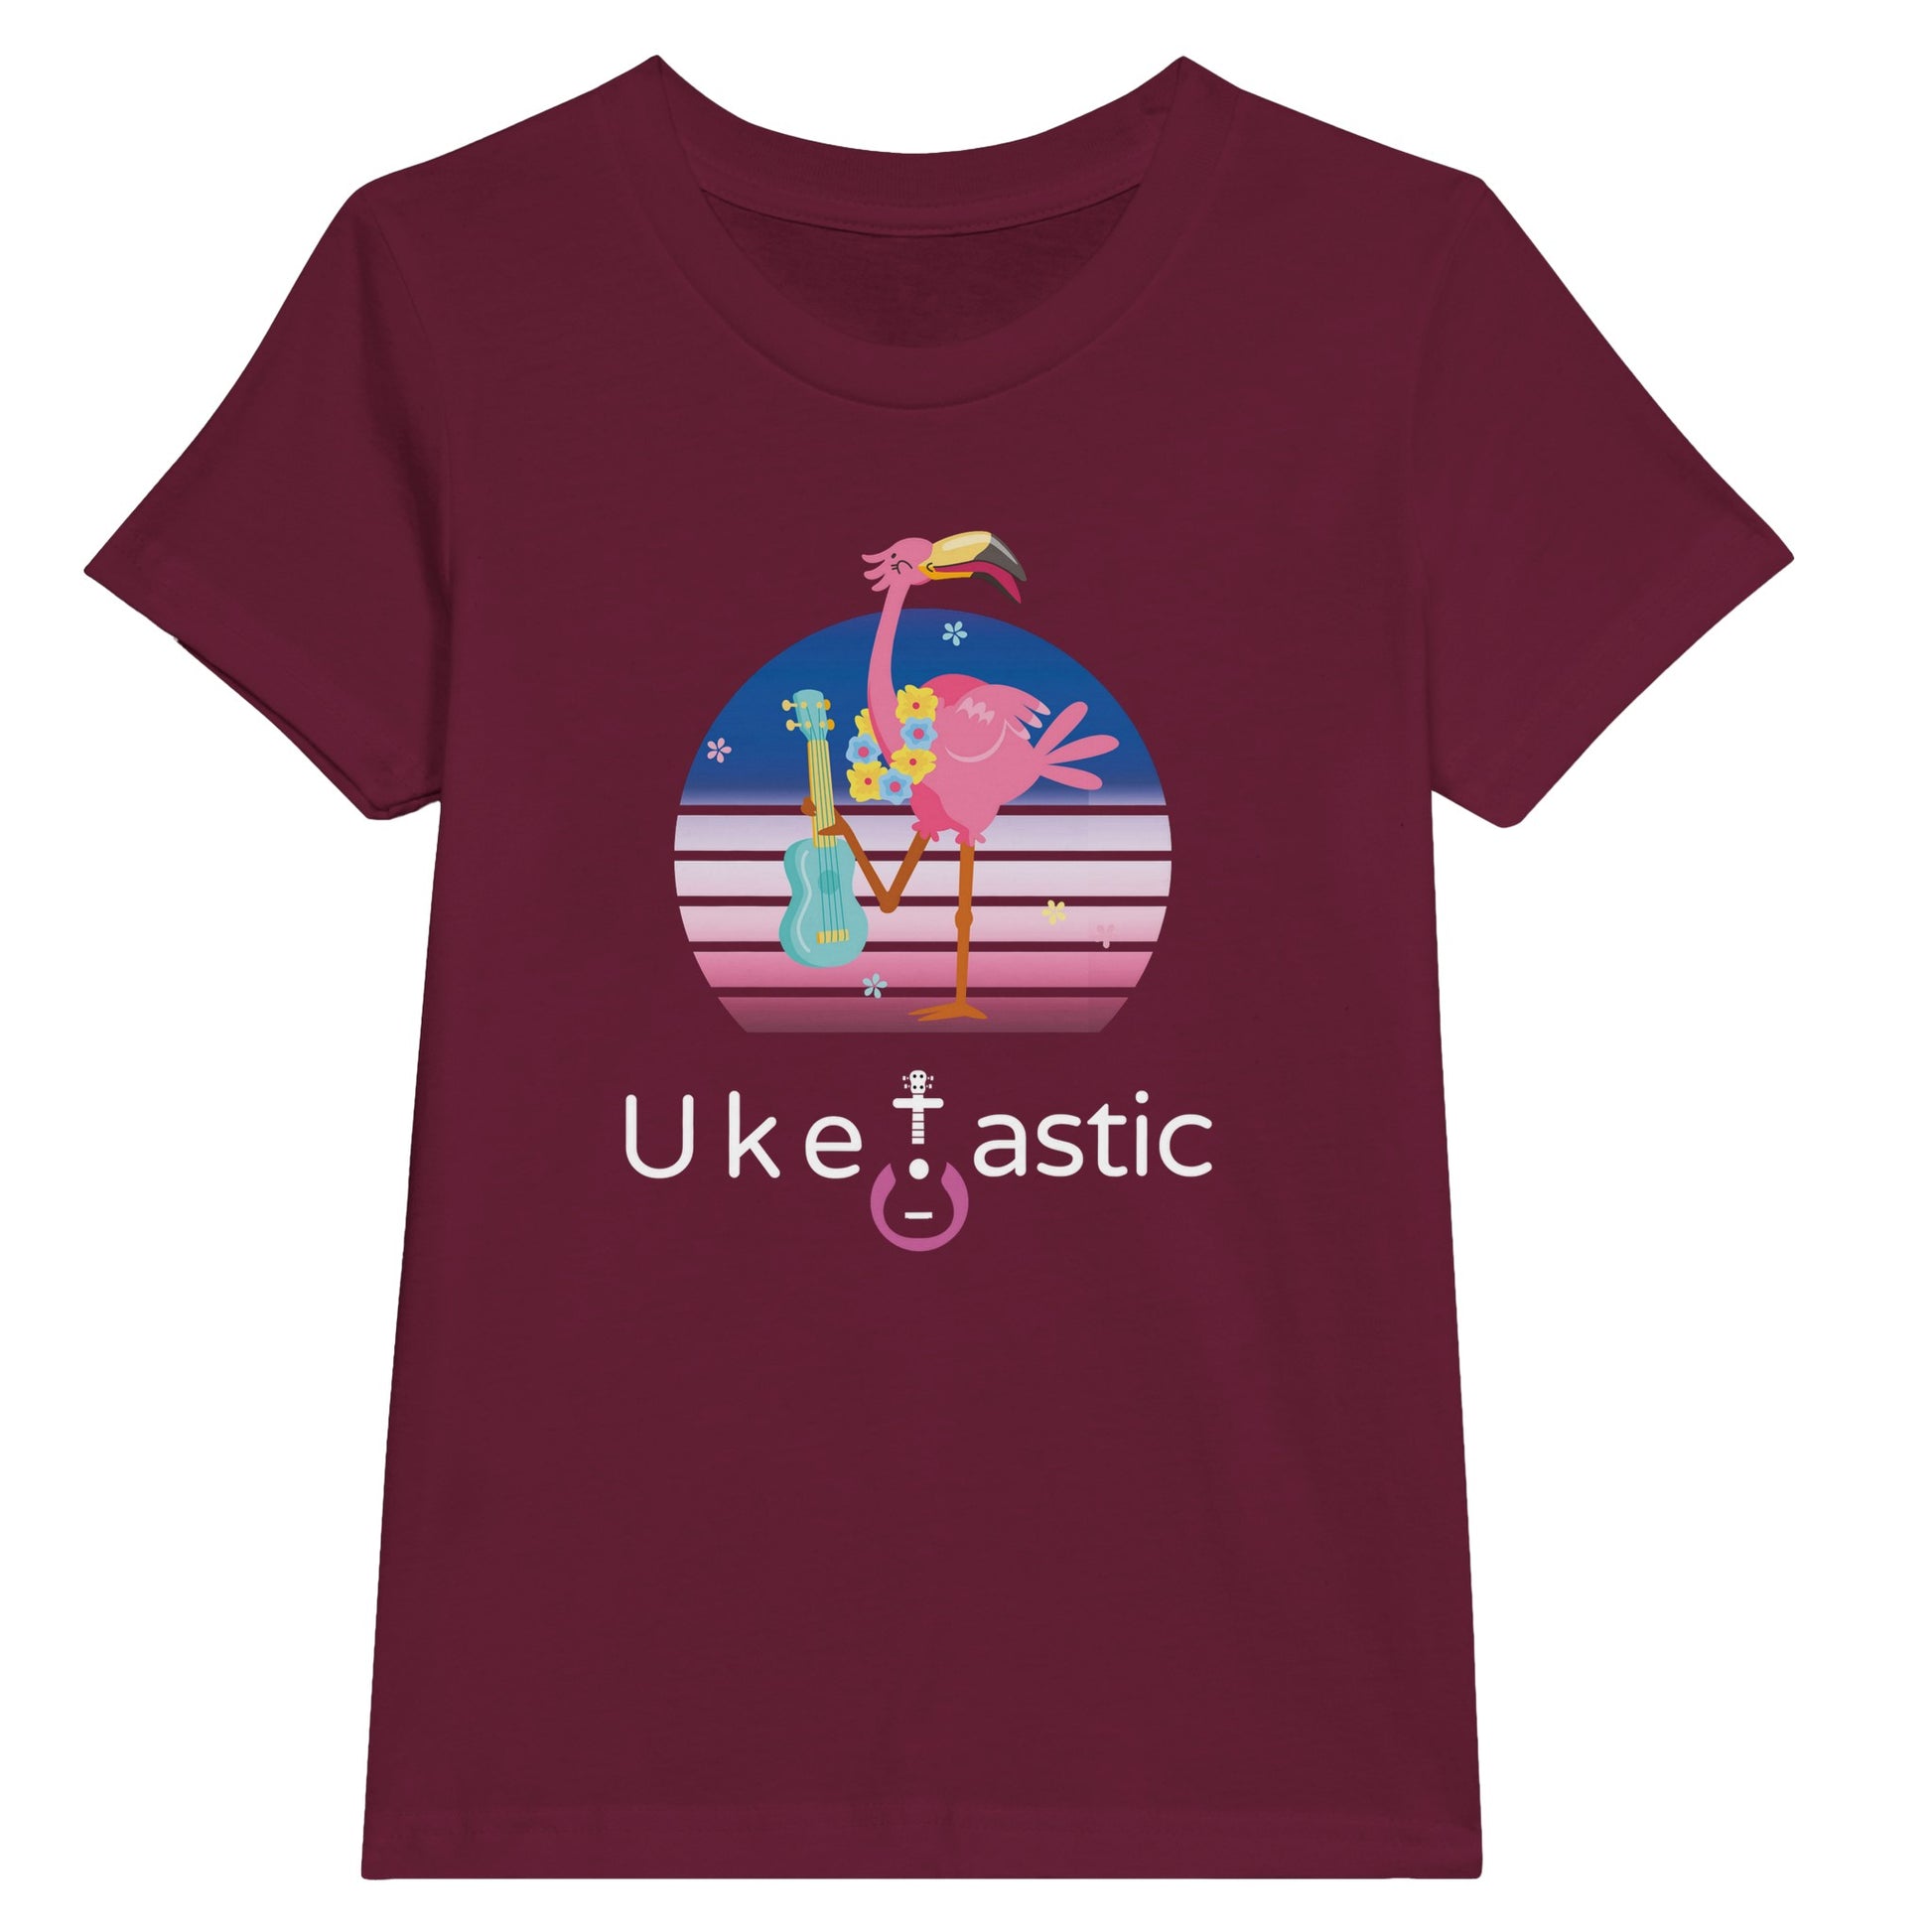 Kids ukulele t-shirt flamingo design red